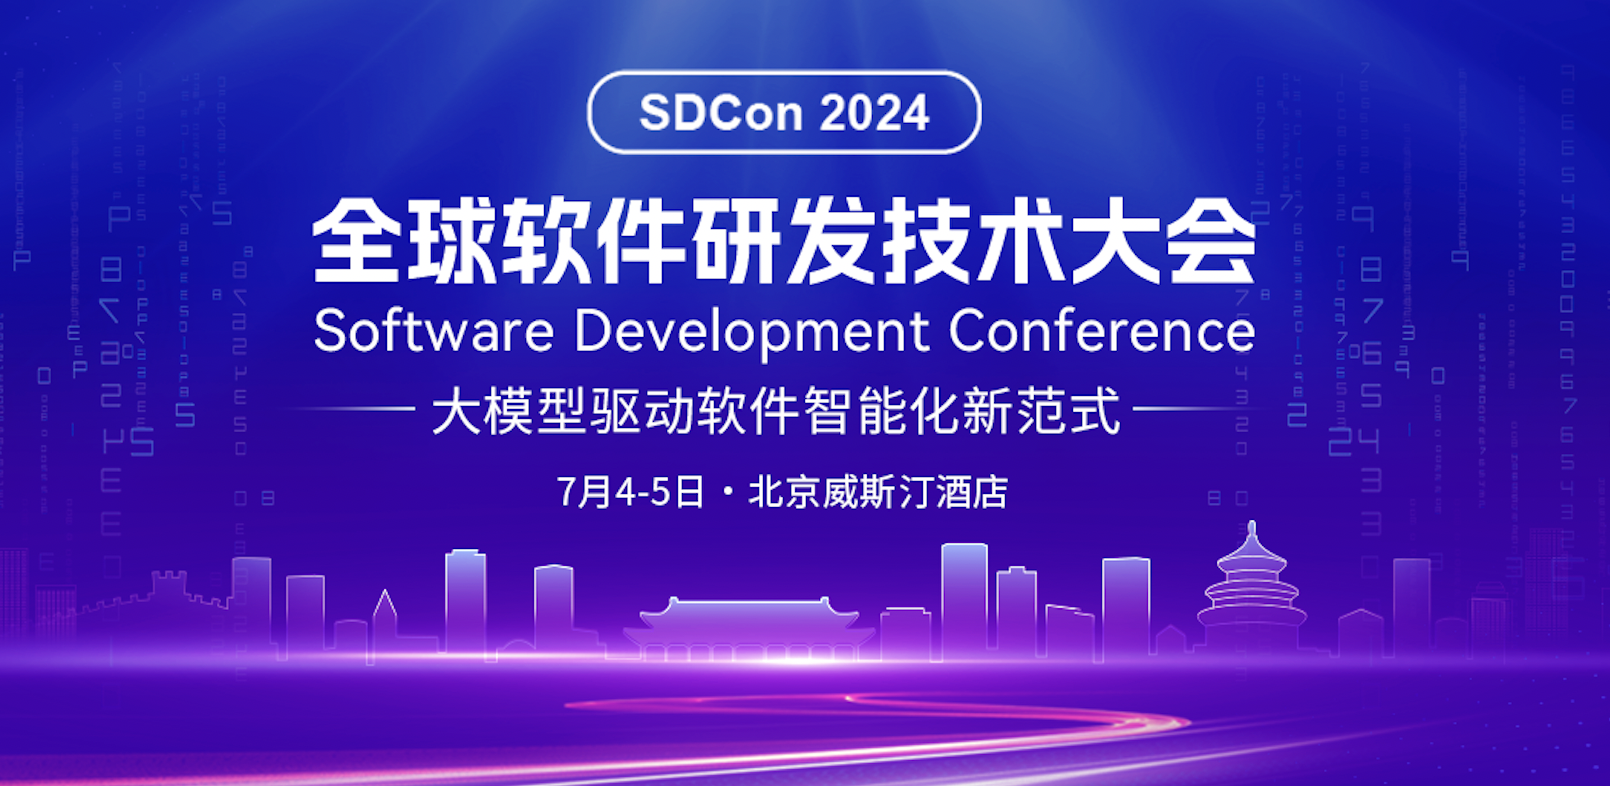 2024 全球软件研发技术大会将于 7 月 4 日-5 日在北京正式举办